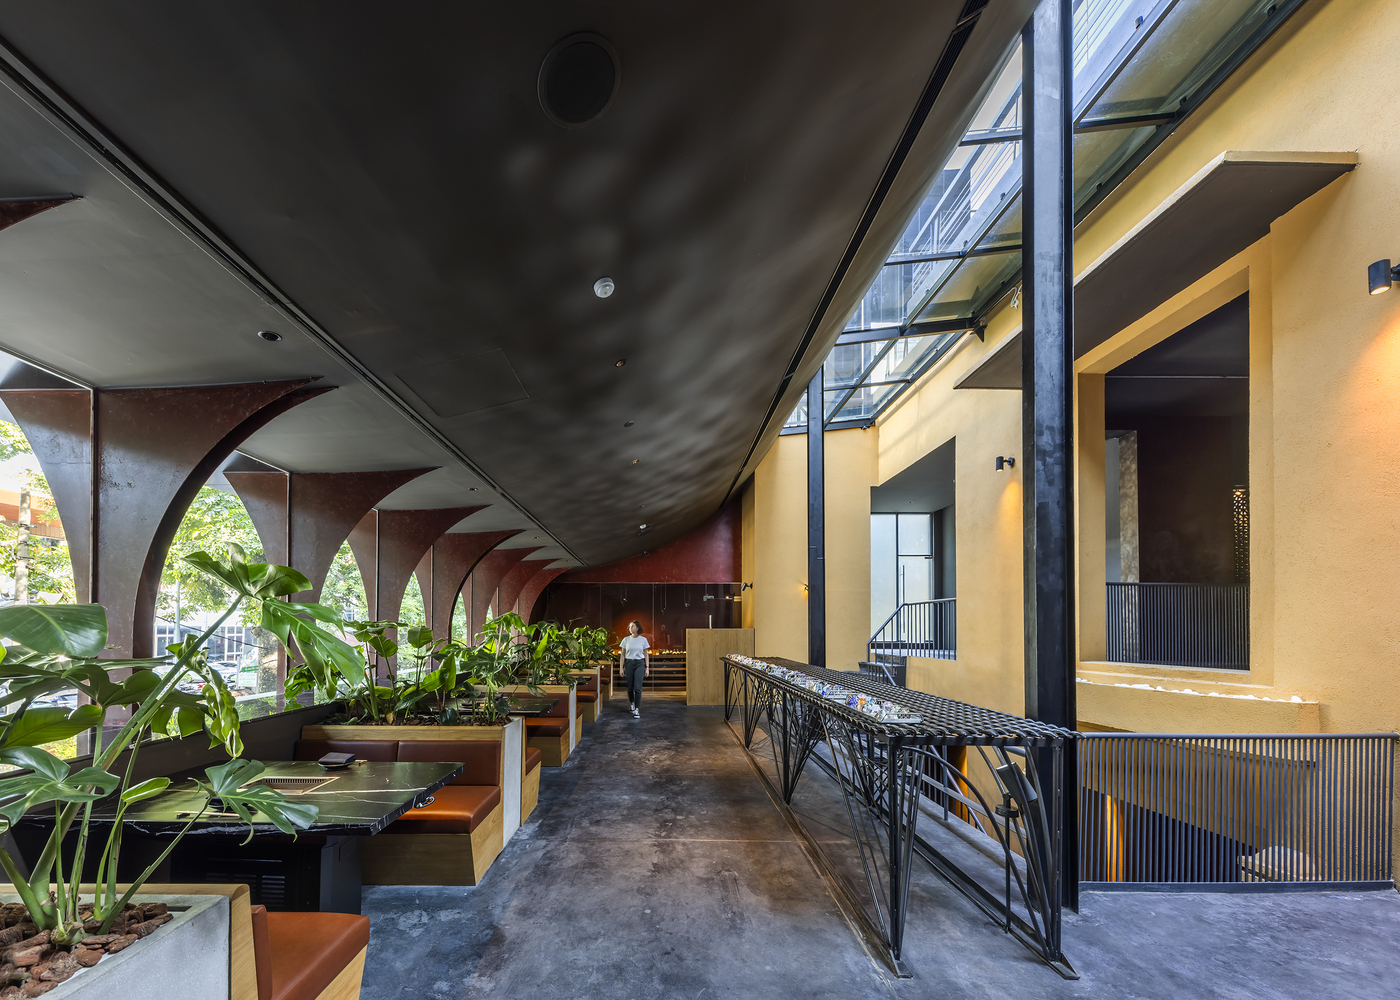 نگاهی به طراحی رستوران یازاوا هانوی توسط معماران تاکاشی نیوا